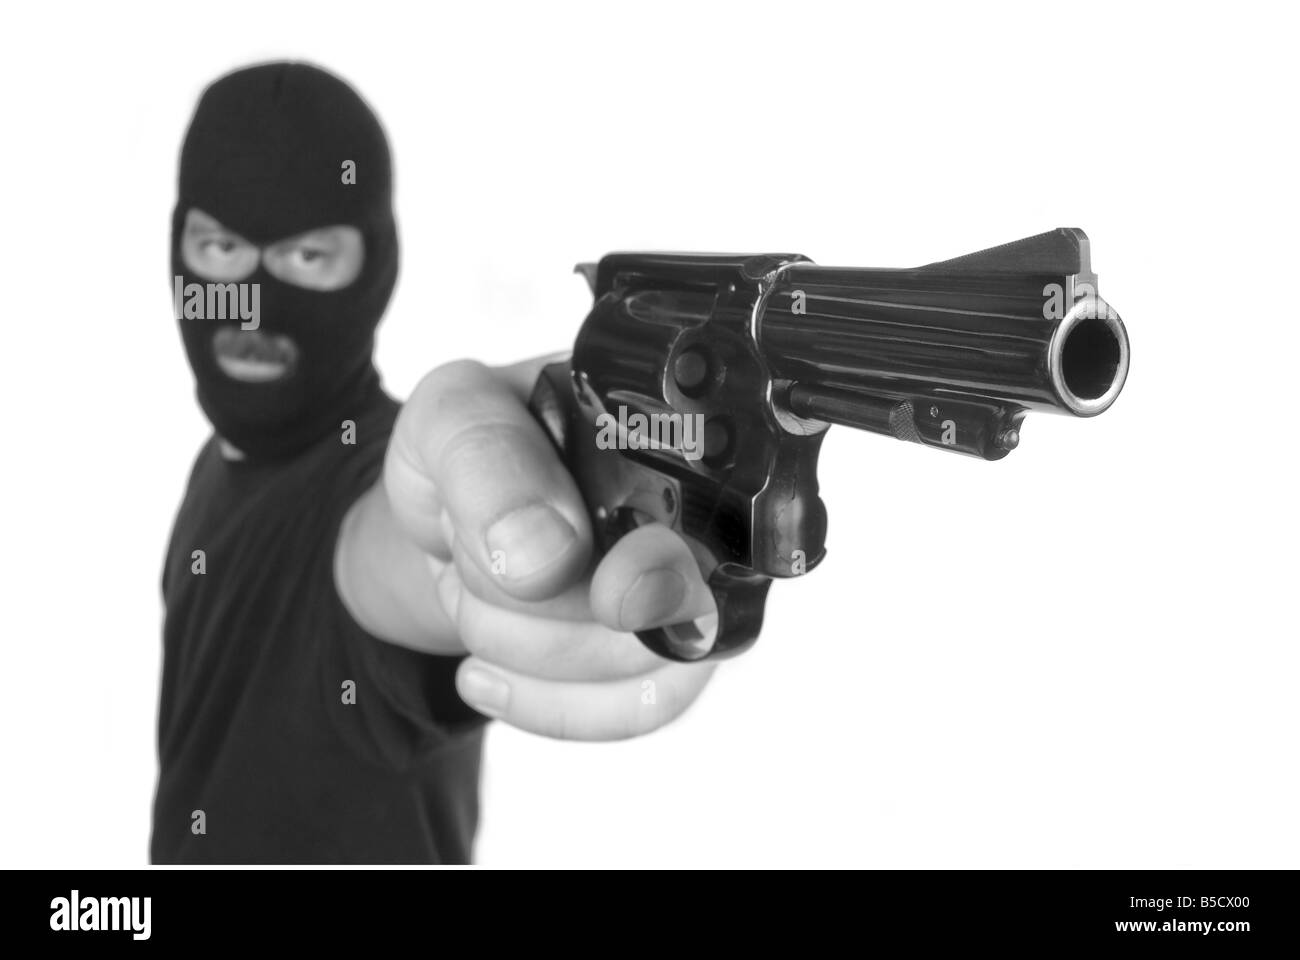 Eine Räuber mit versteckten Gesicht zeigt seine Waffe in einem Raub-Versuch Stockfoto